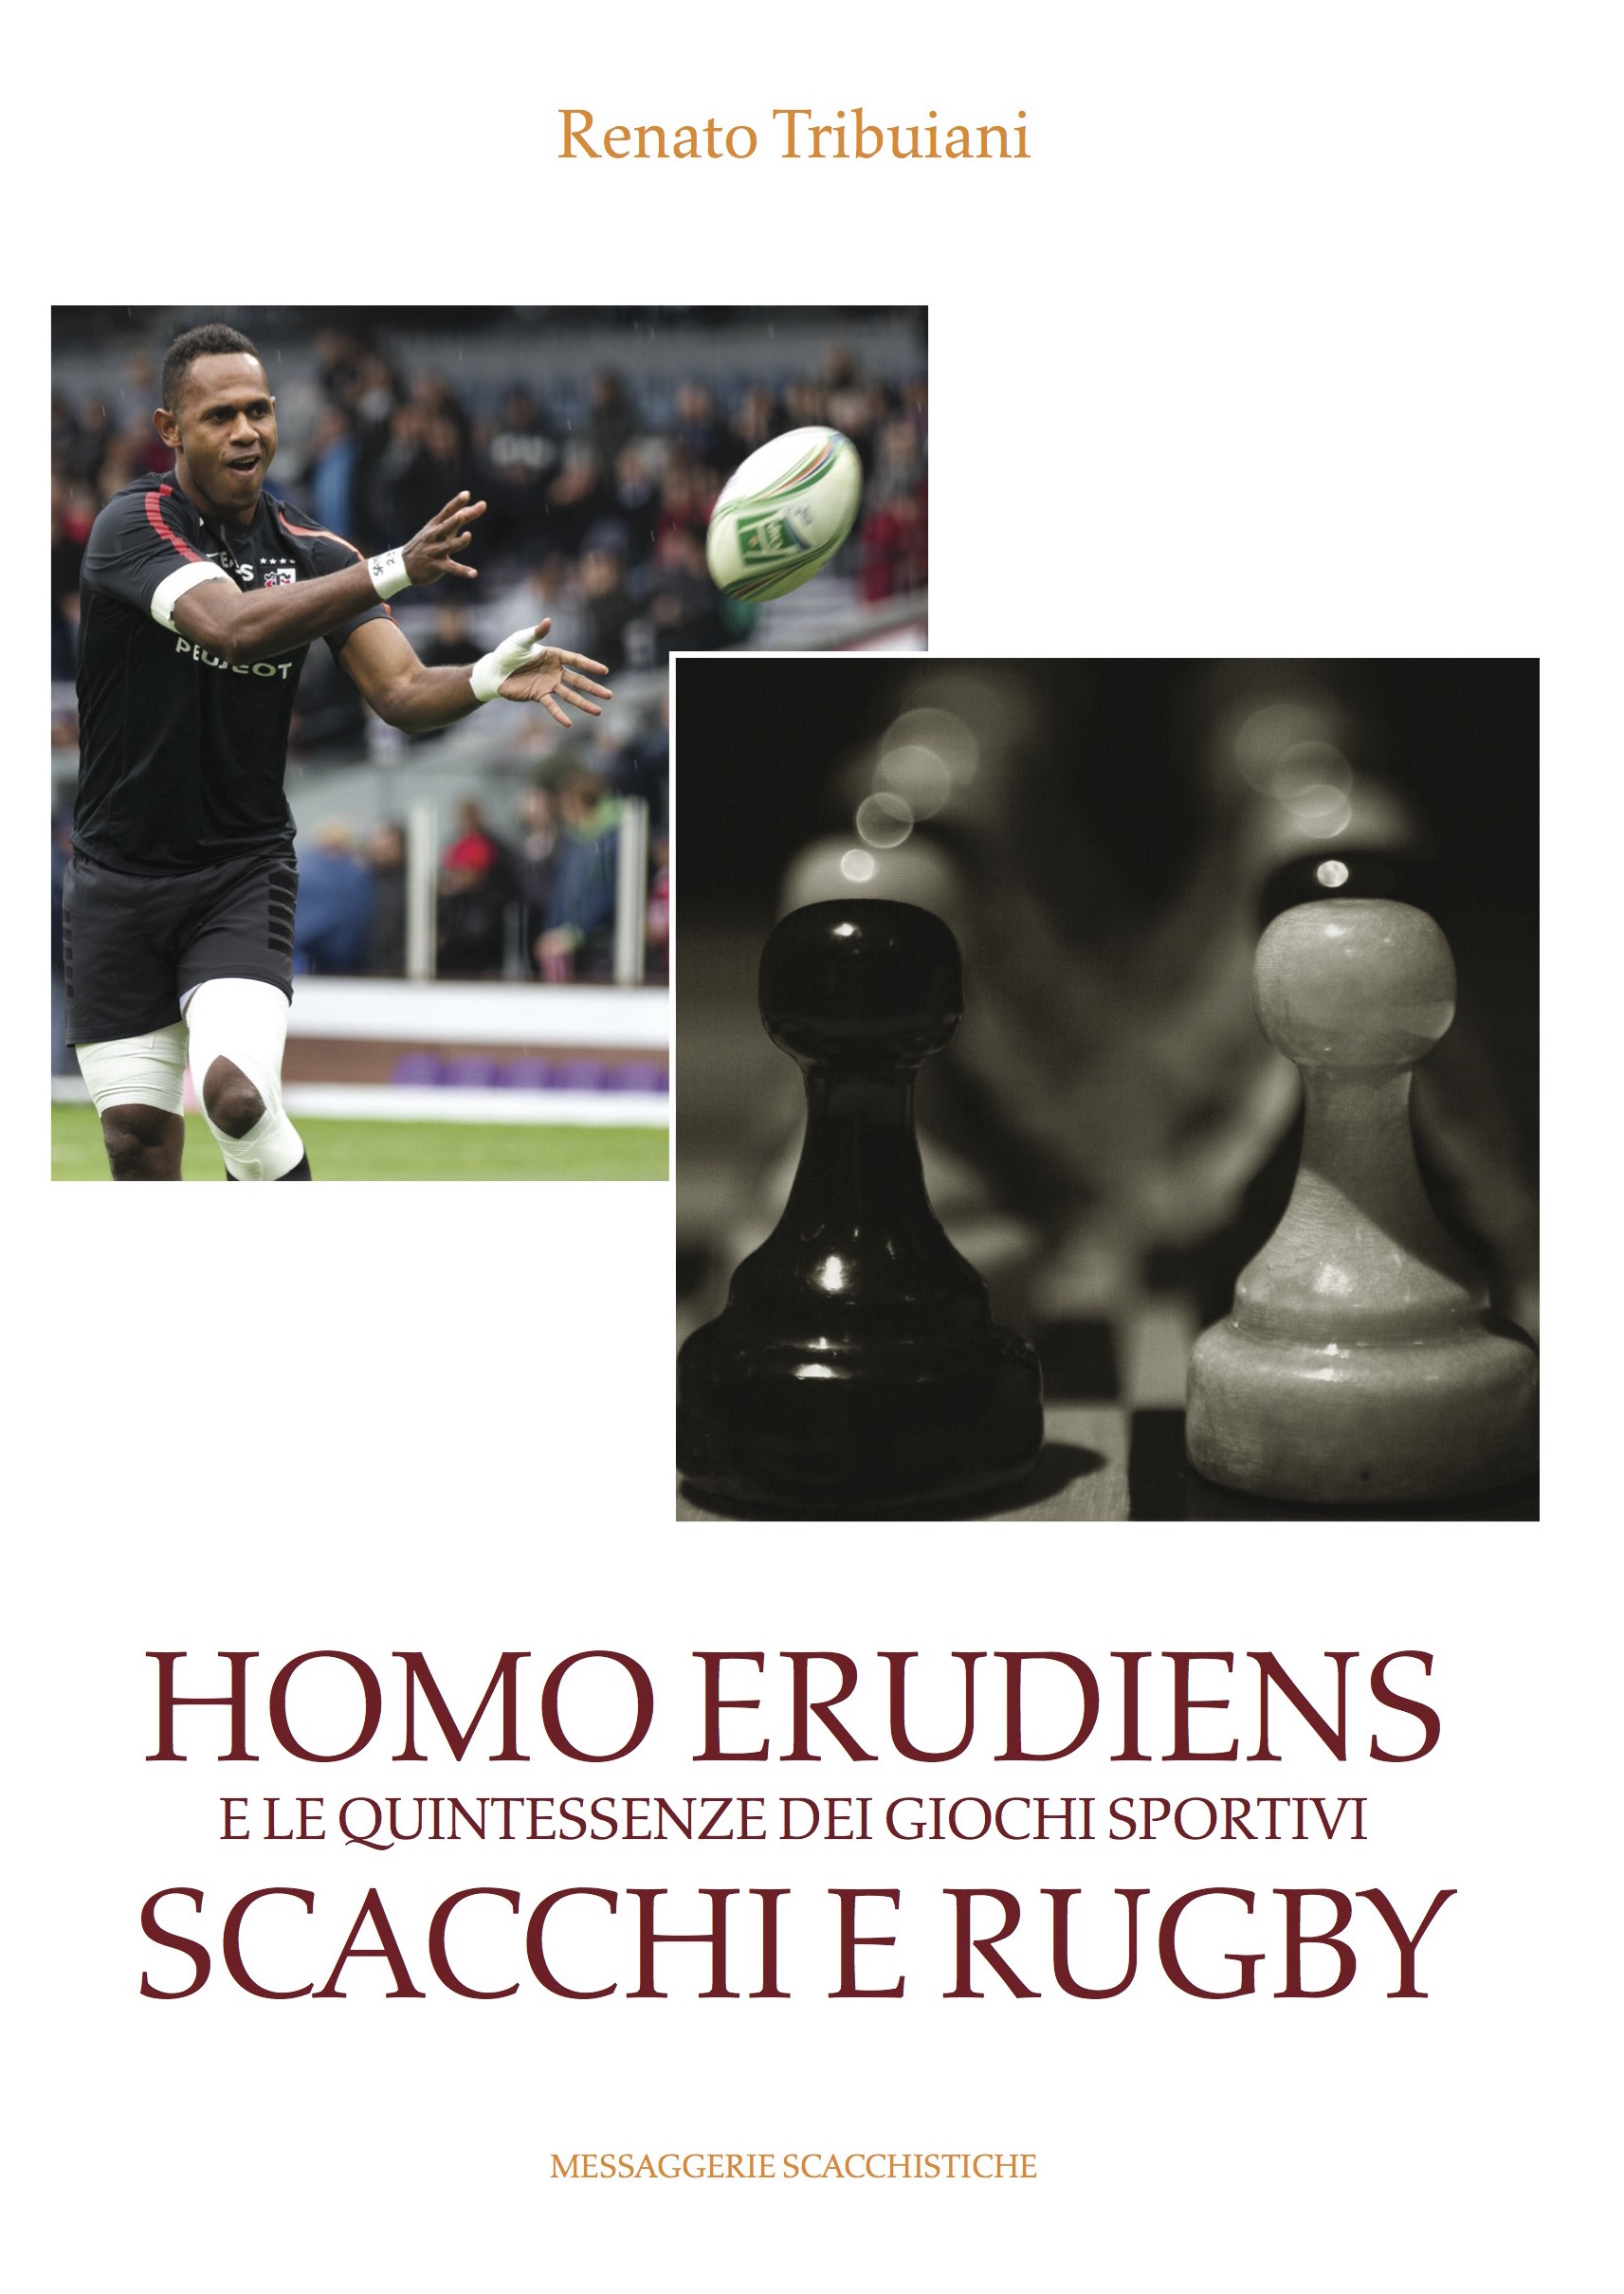 Homo erudiens - scacchi e rugby